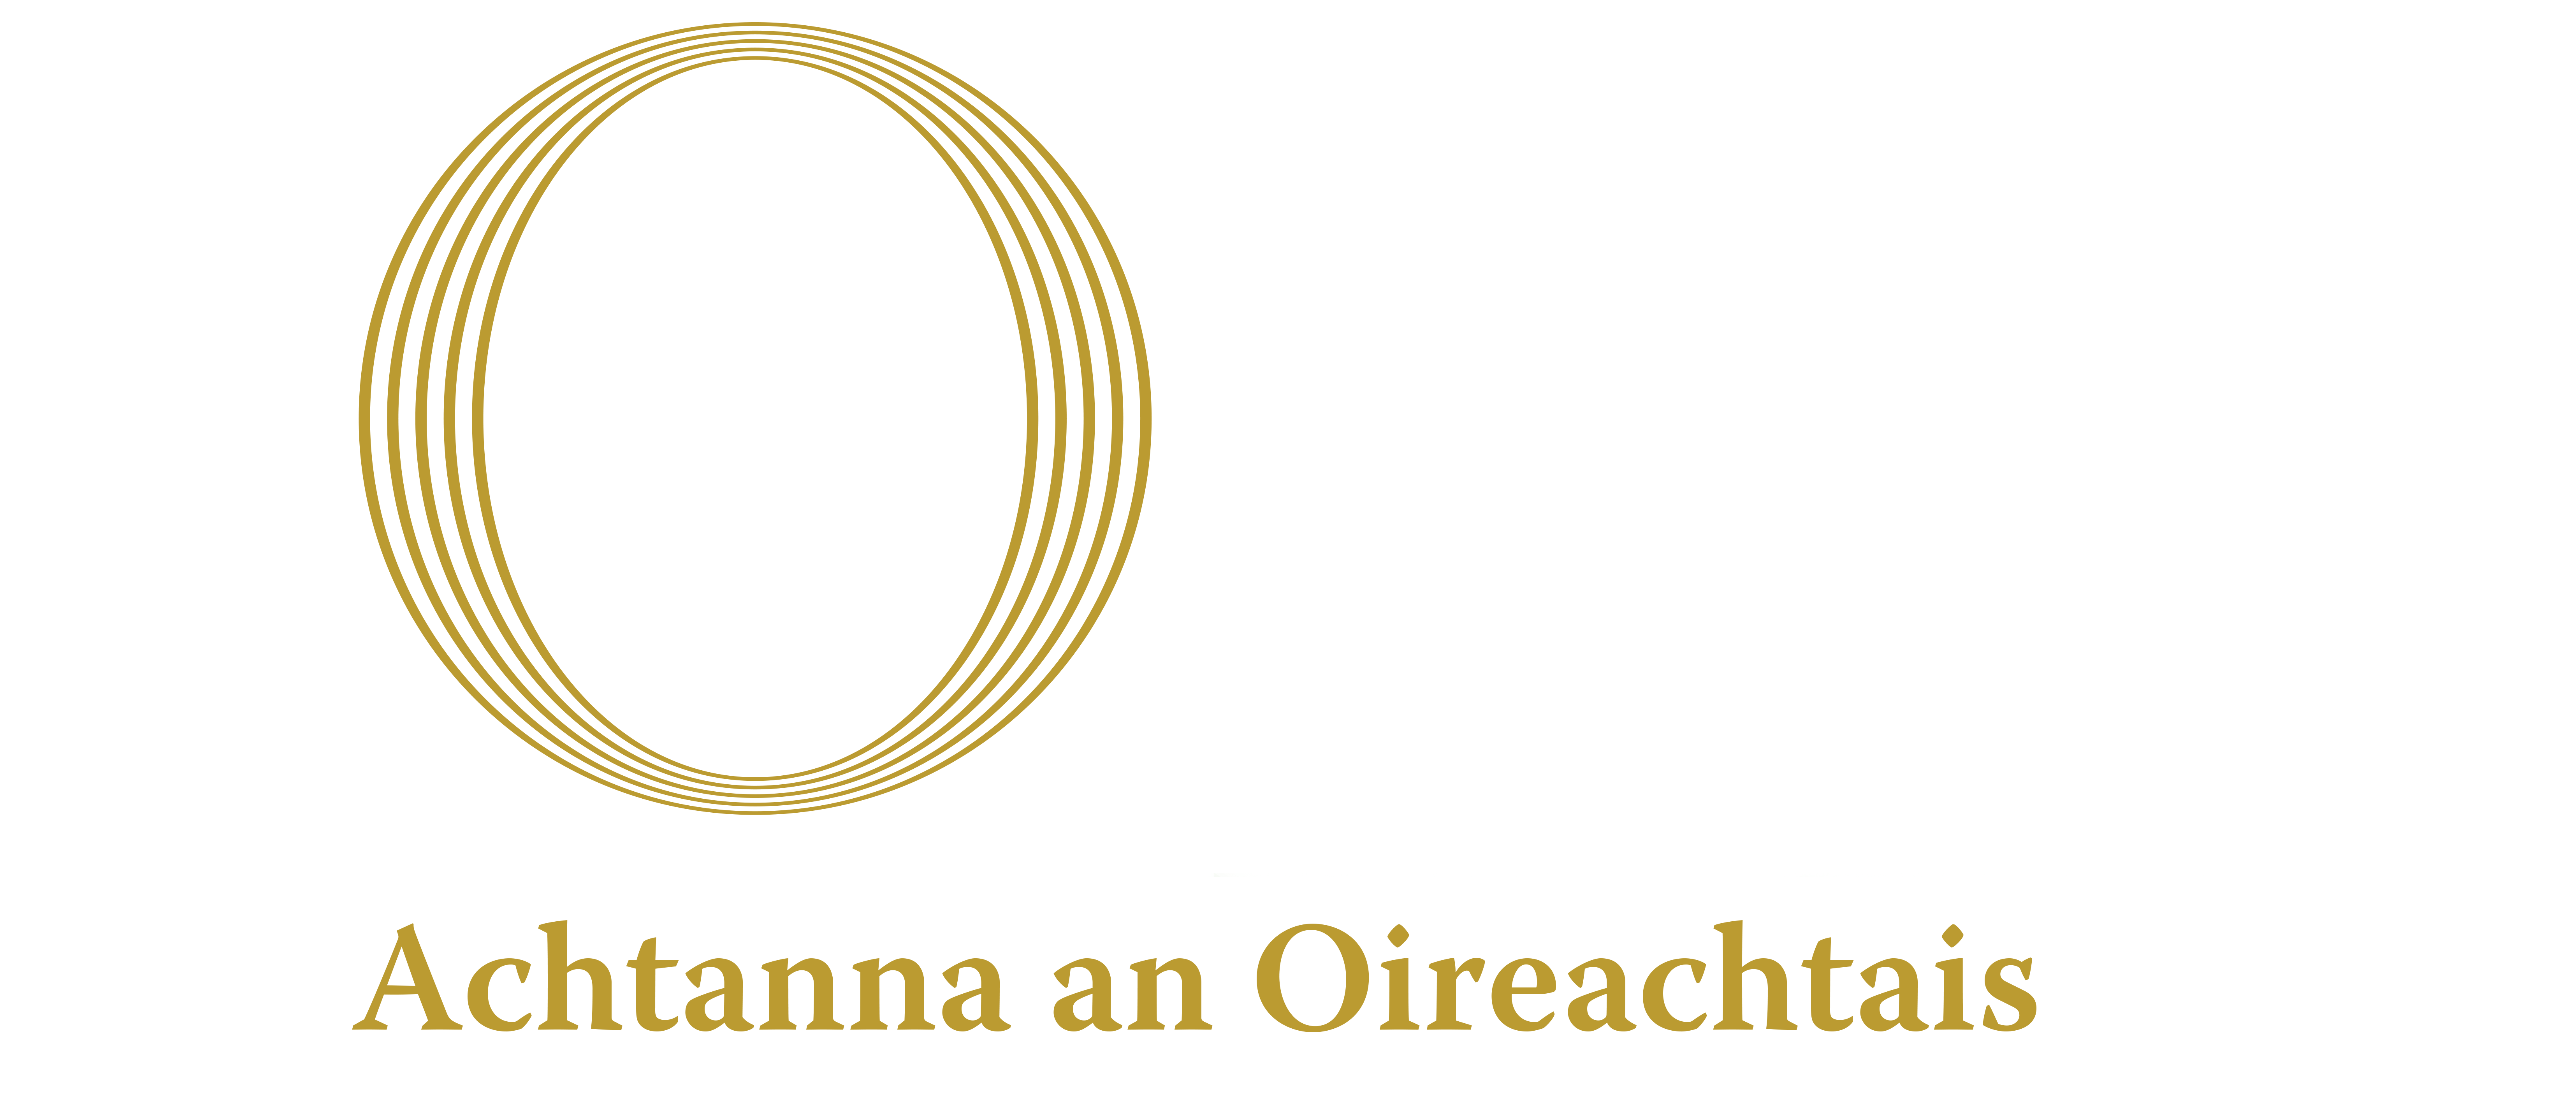 House of the Oireachtas